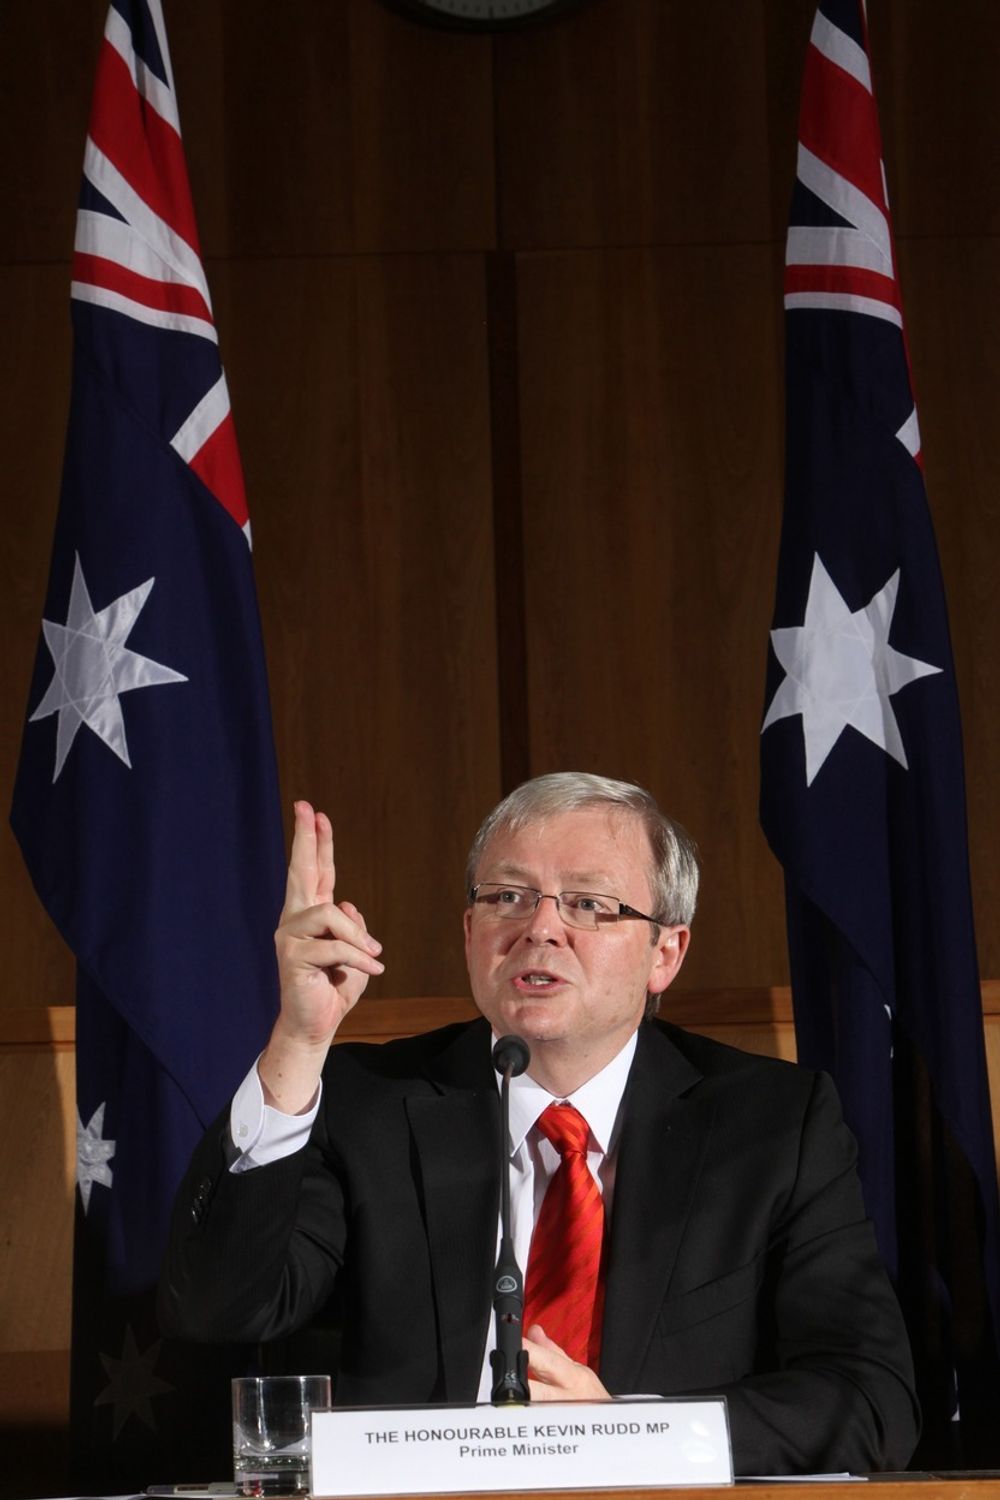 Regjeringen i Australia vil vente med å innføre kvotehandel til etter Kyotoprotokollens utløp i 2012, ifølge statsminister Kevin Rudd.